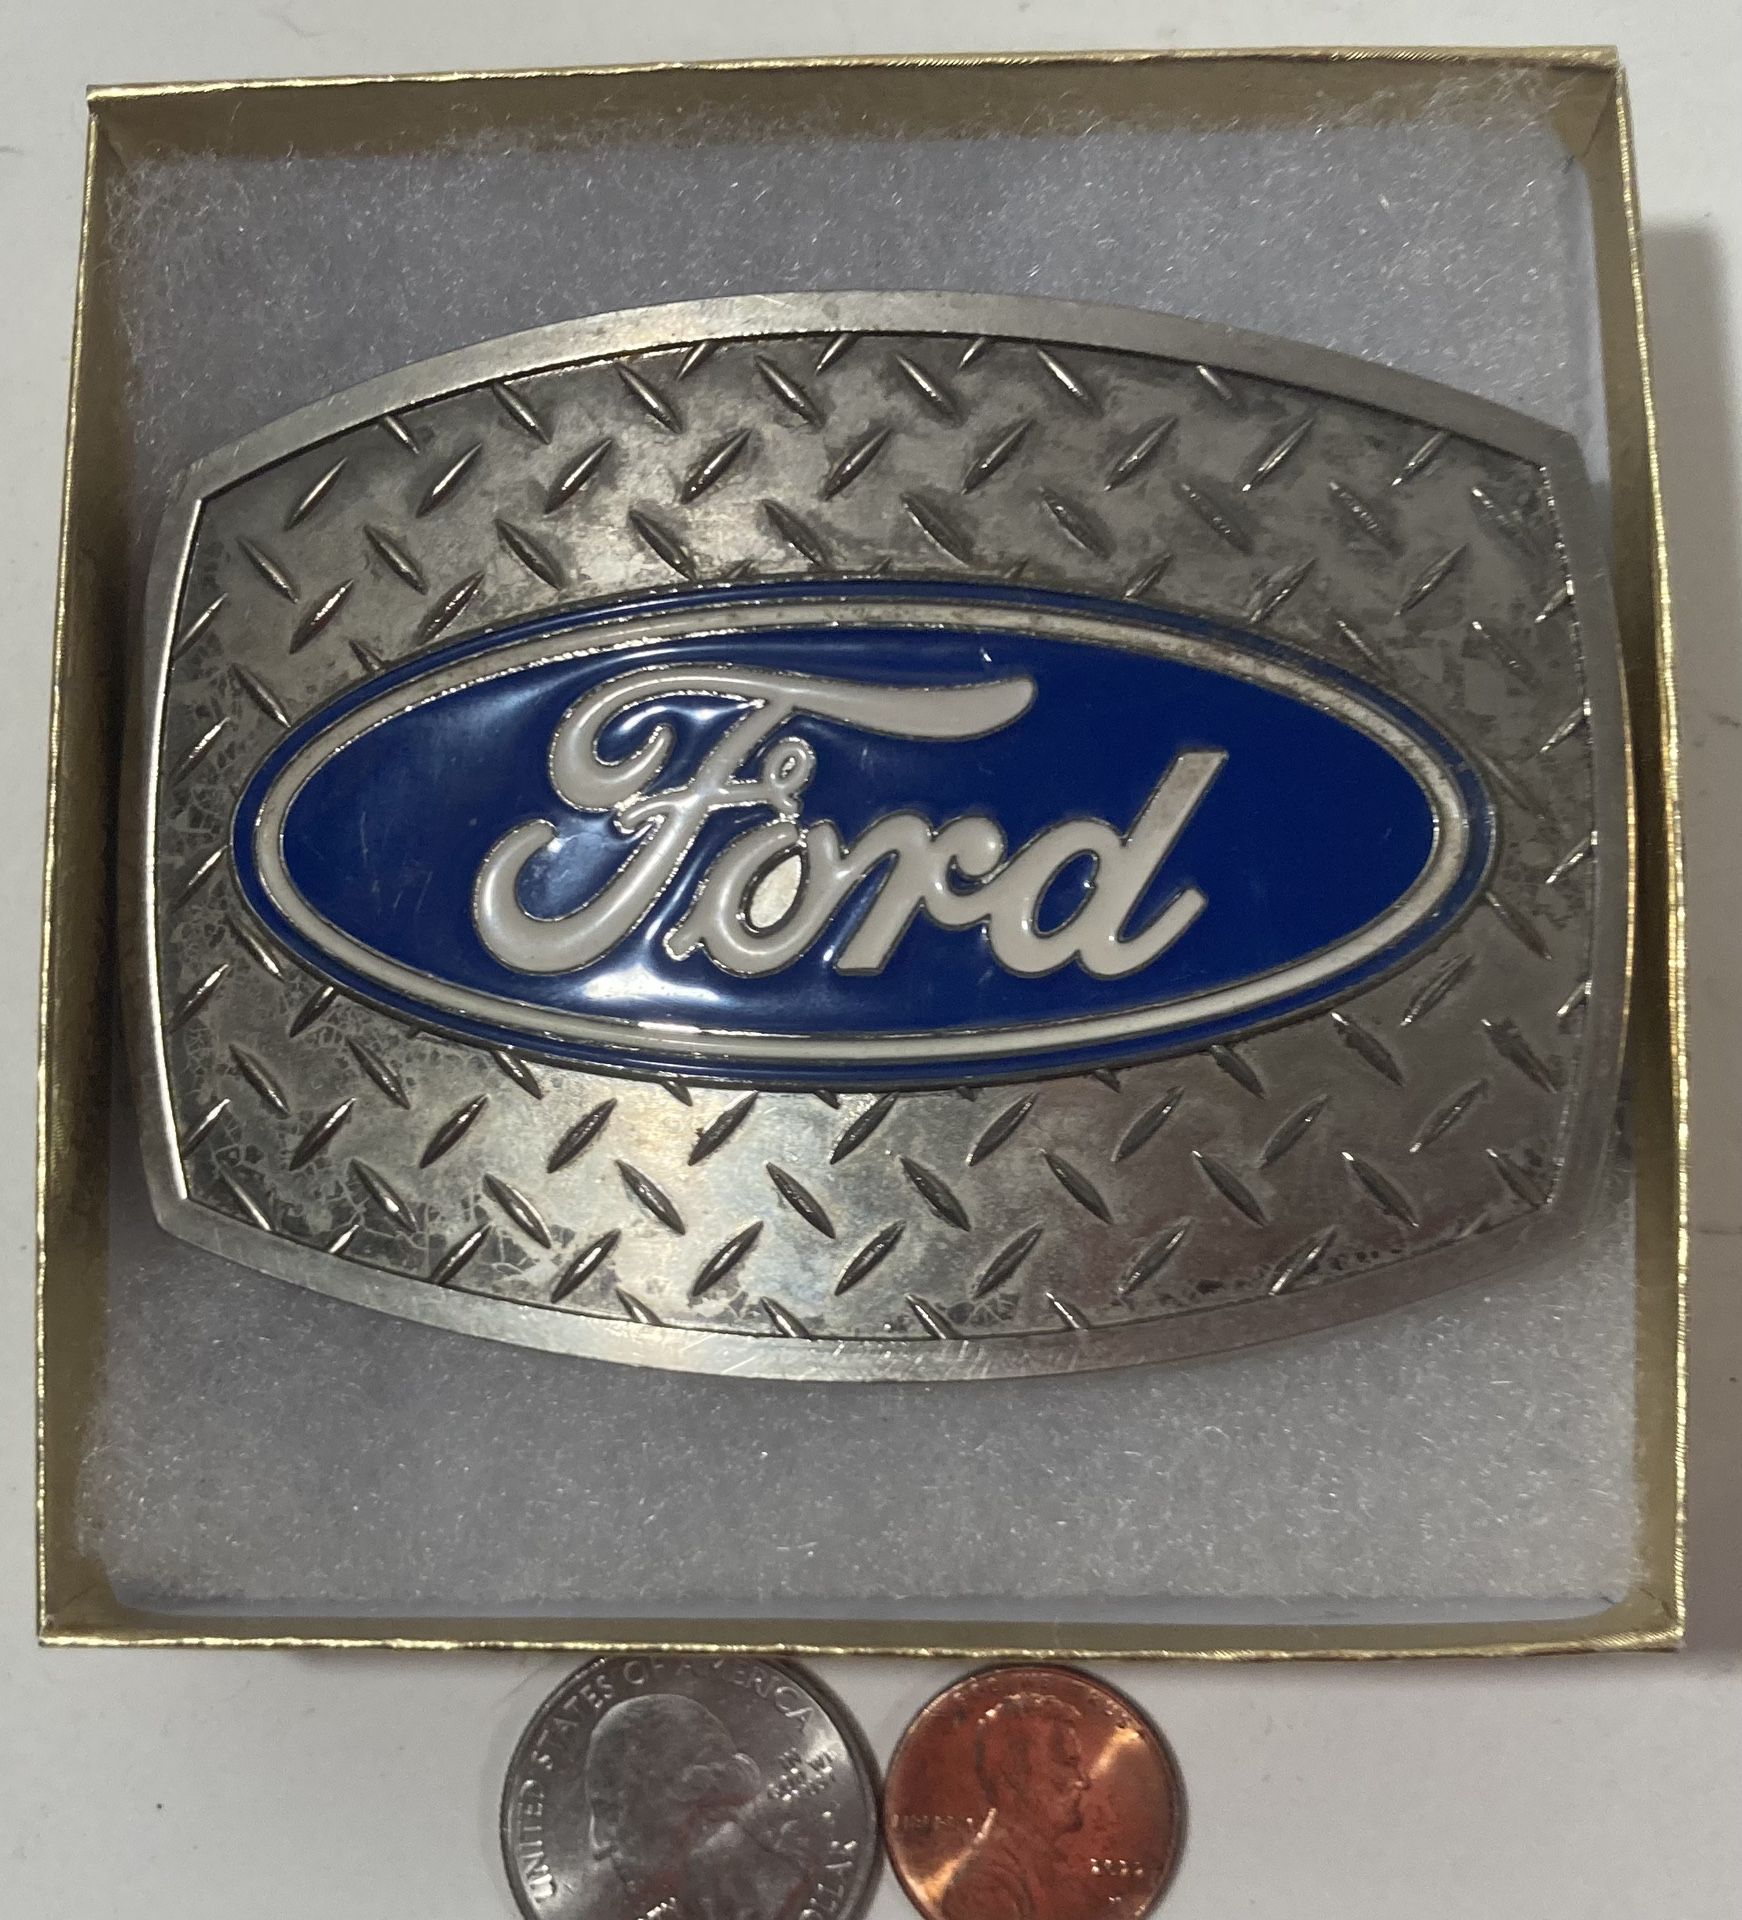 Vintage Belt Buckle Ford Diamond plate